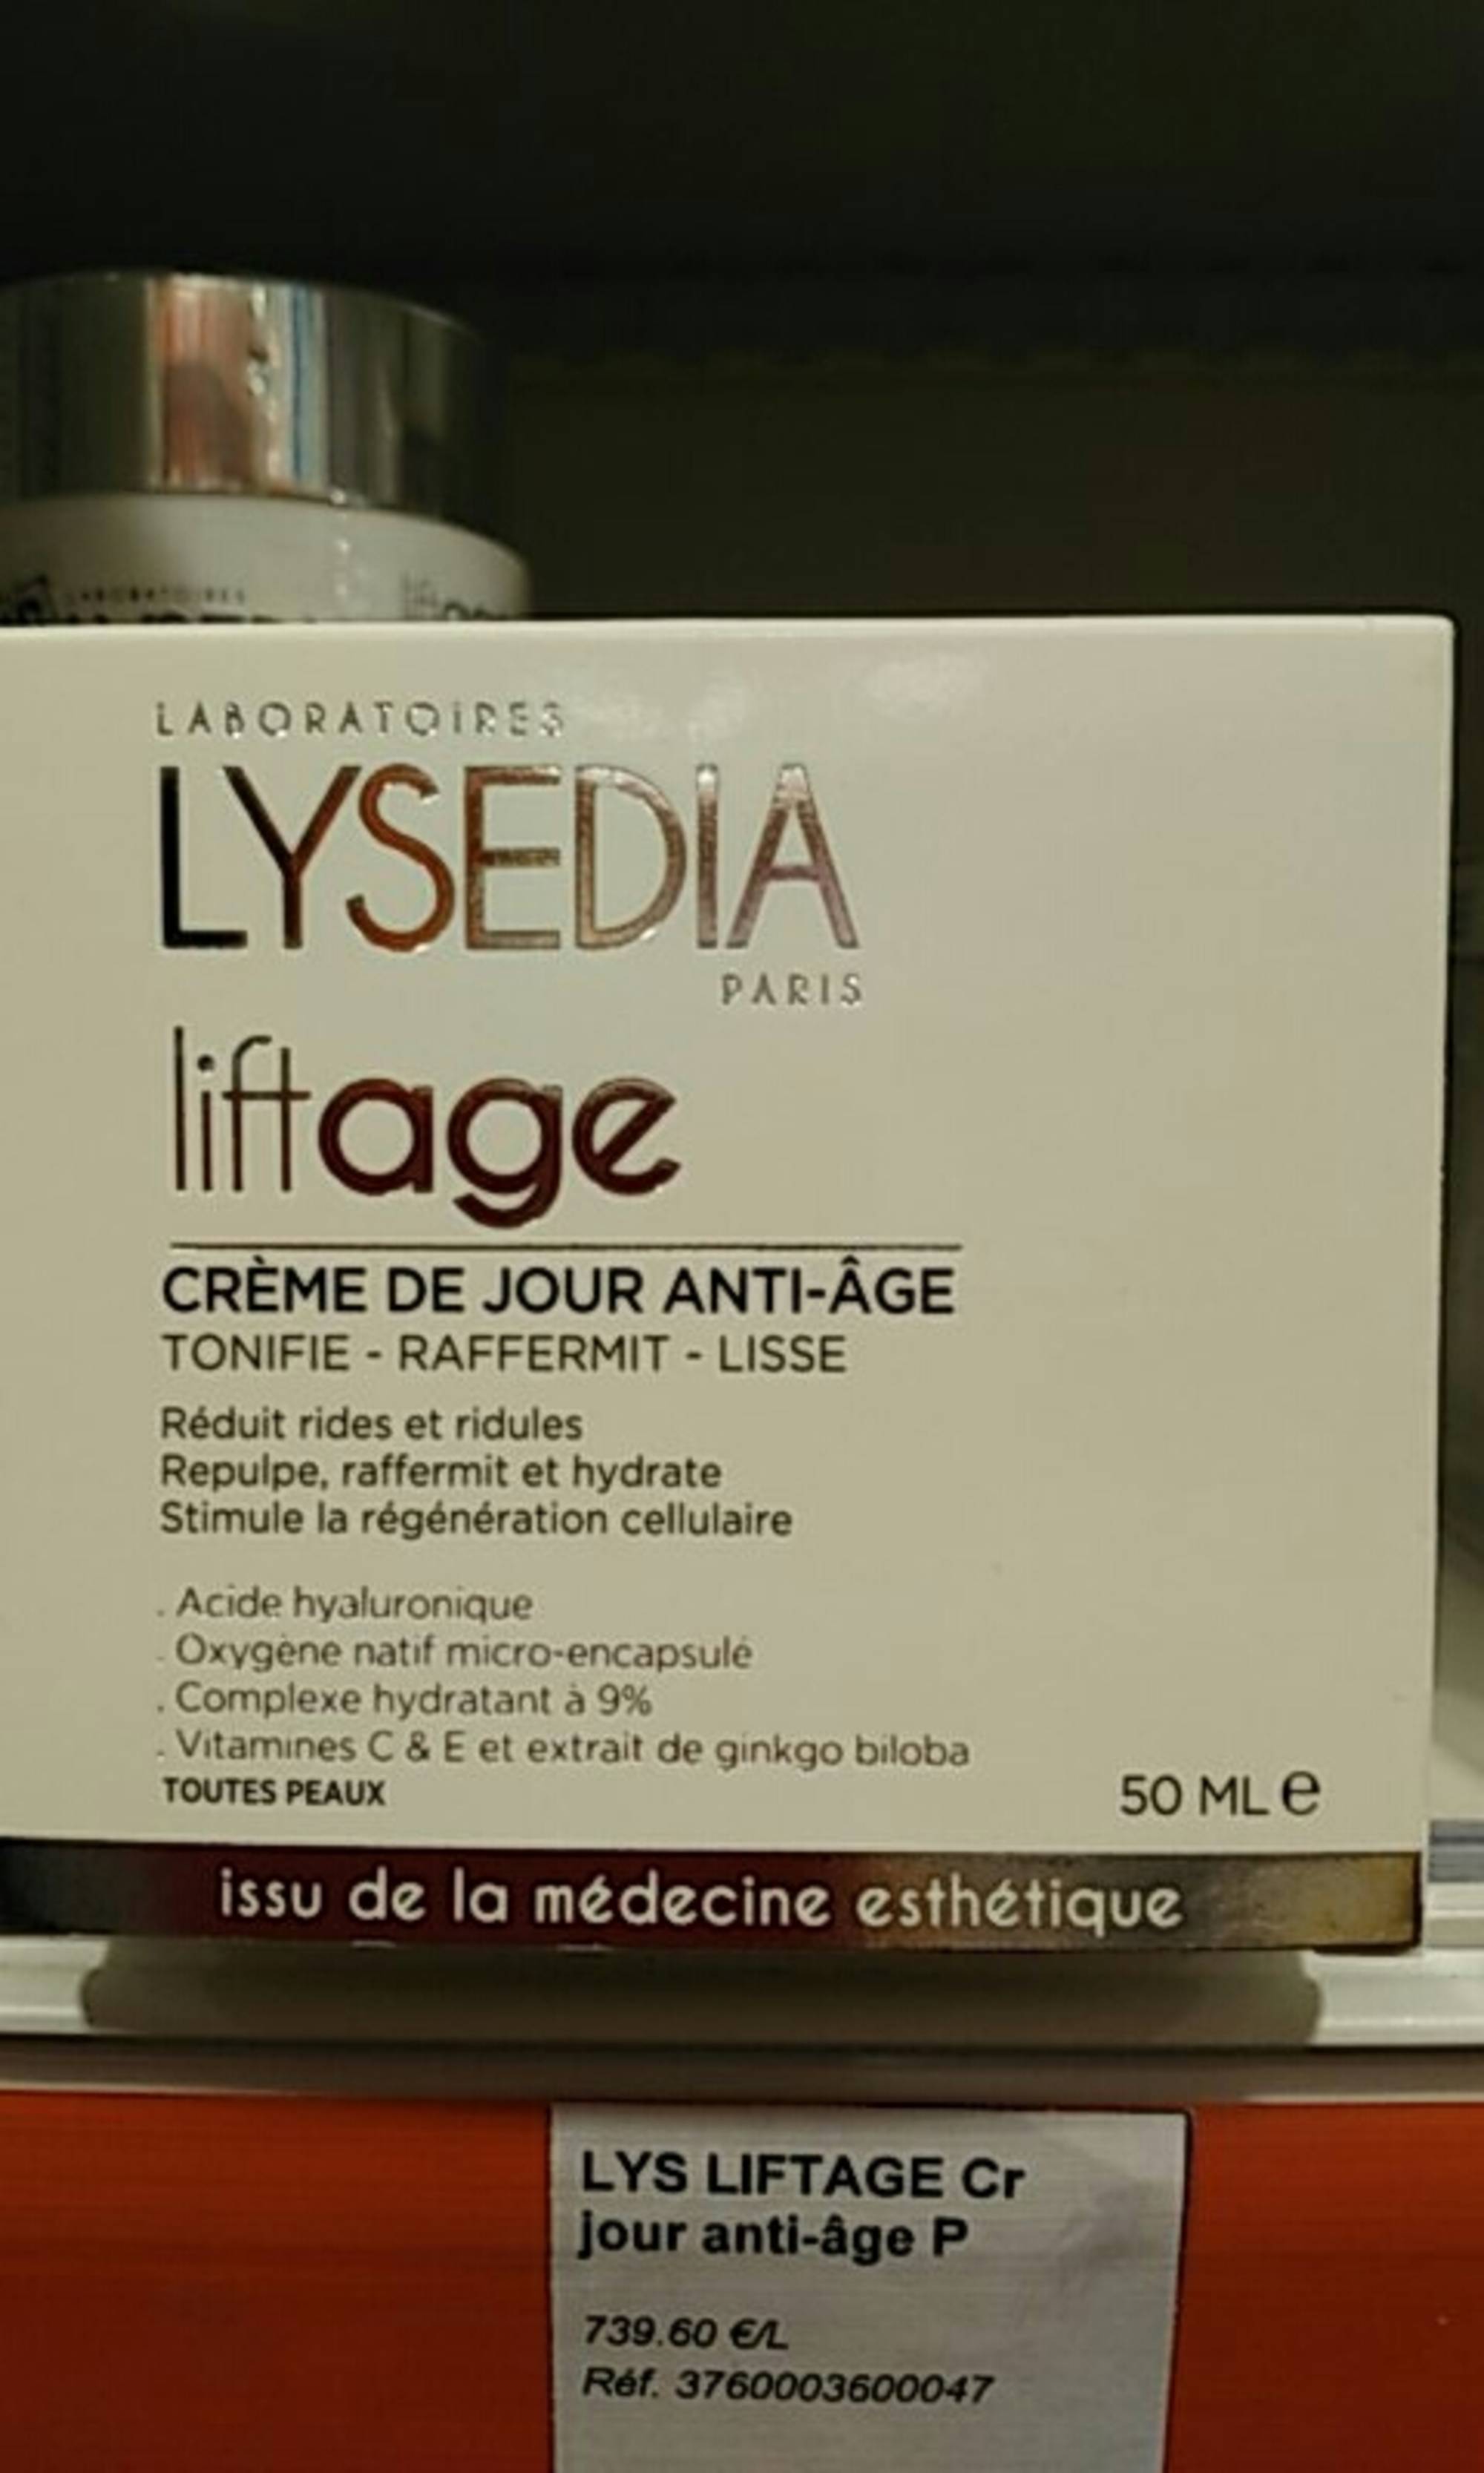 LYSEDIA - Liftage - Crème de jour anti-âge